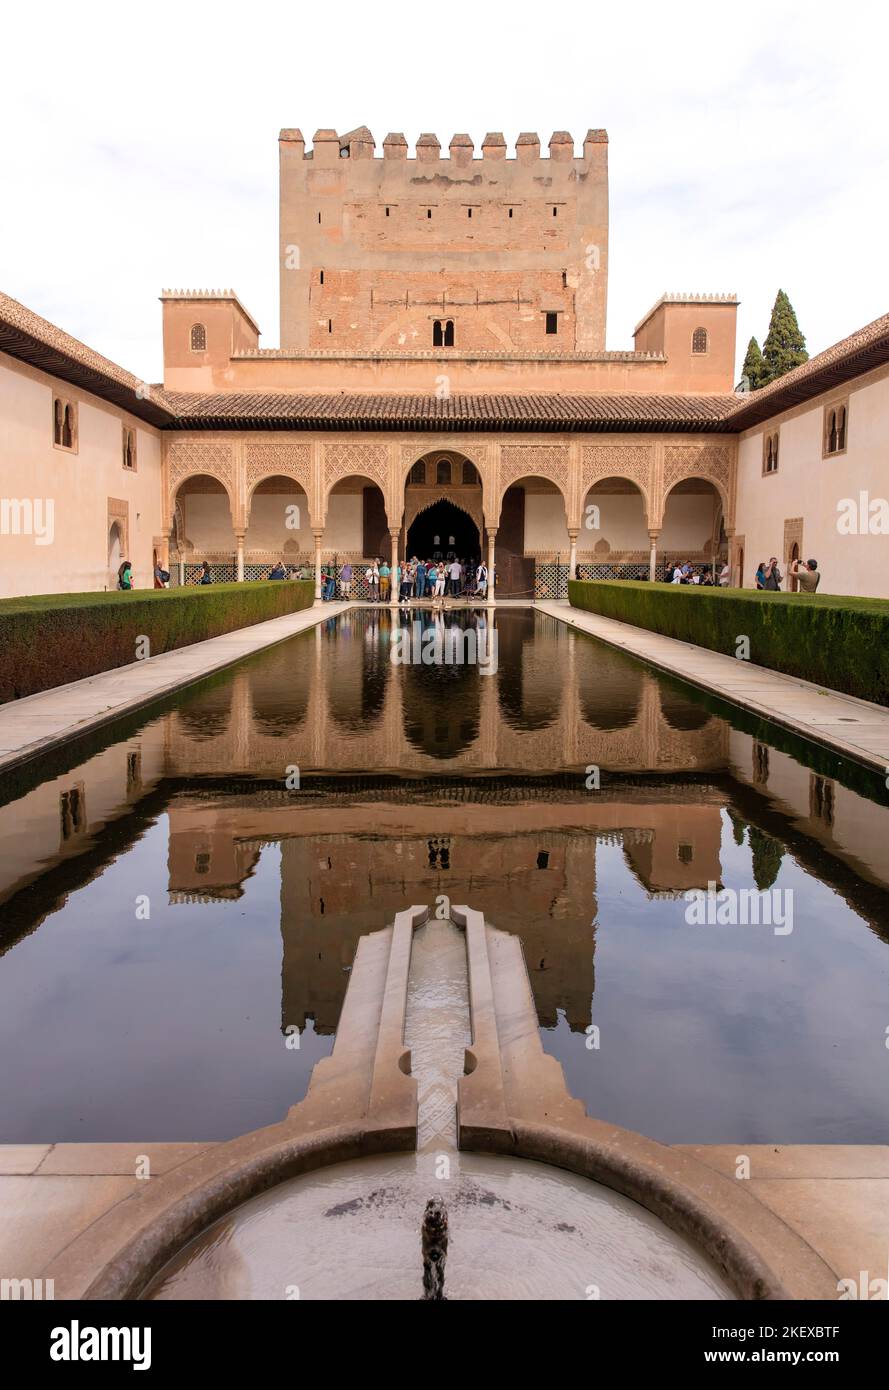 Die Menschen betrachten die islamische Architektur und das Wasserwerk in der Alhambra, Granada, Andalusien, Spanien Stockfoto